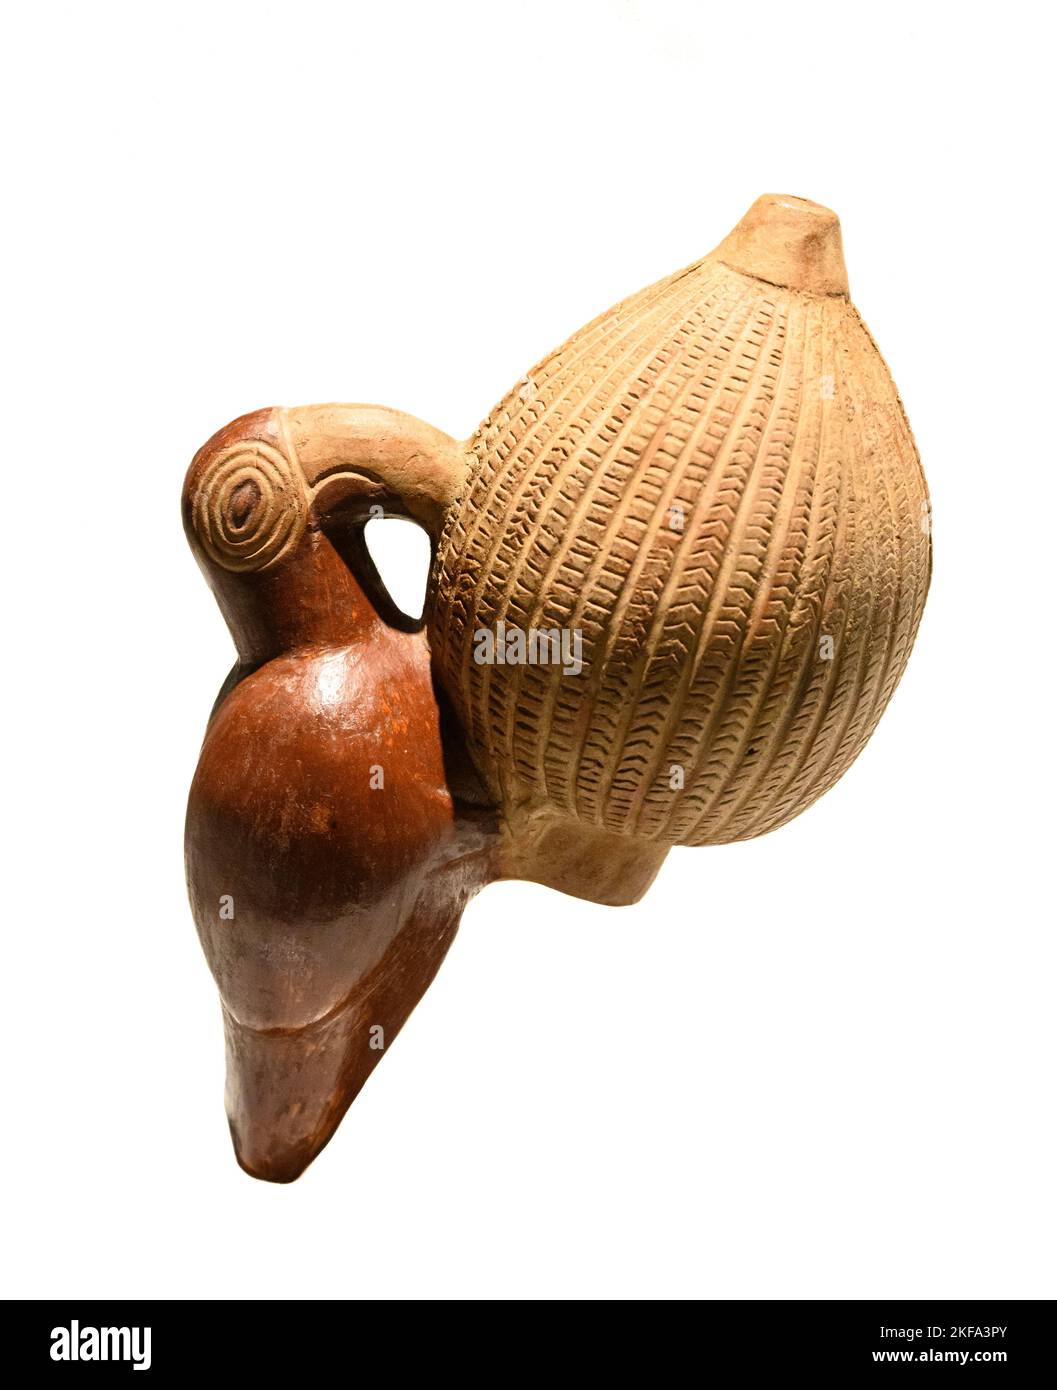 Zoomorphe, keramische Vase oder Topf in Form eines Vogels, der eine Frucht isst. Aus dem Chimor - Inka-Königreich oder Chimu - Inka-Kultur von Peru. Später Horizont Stockfoto